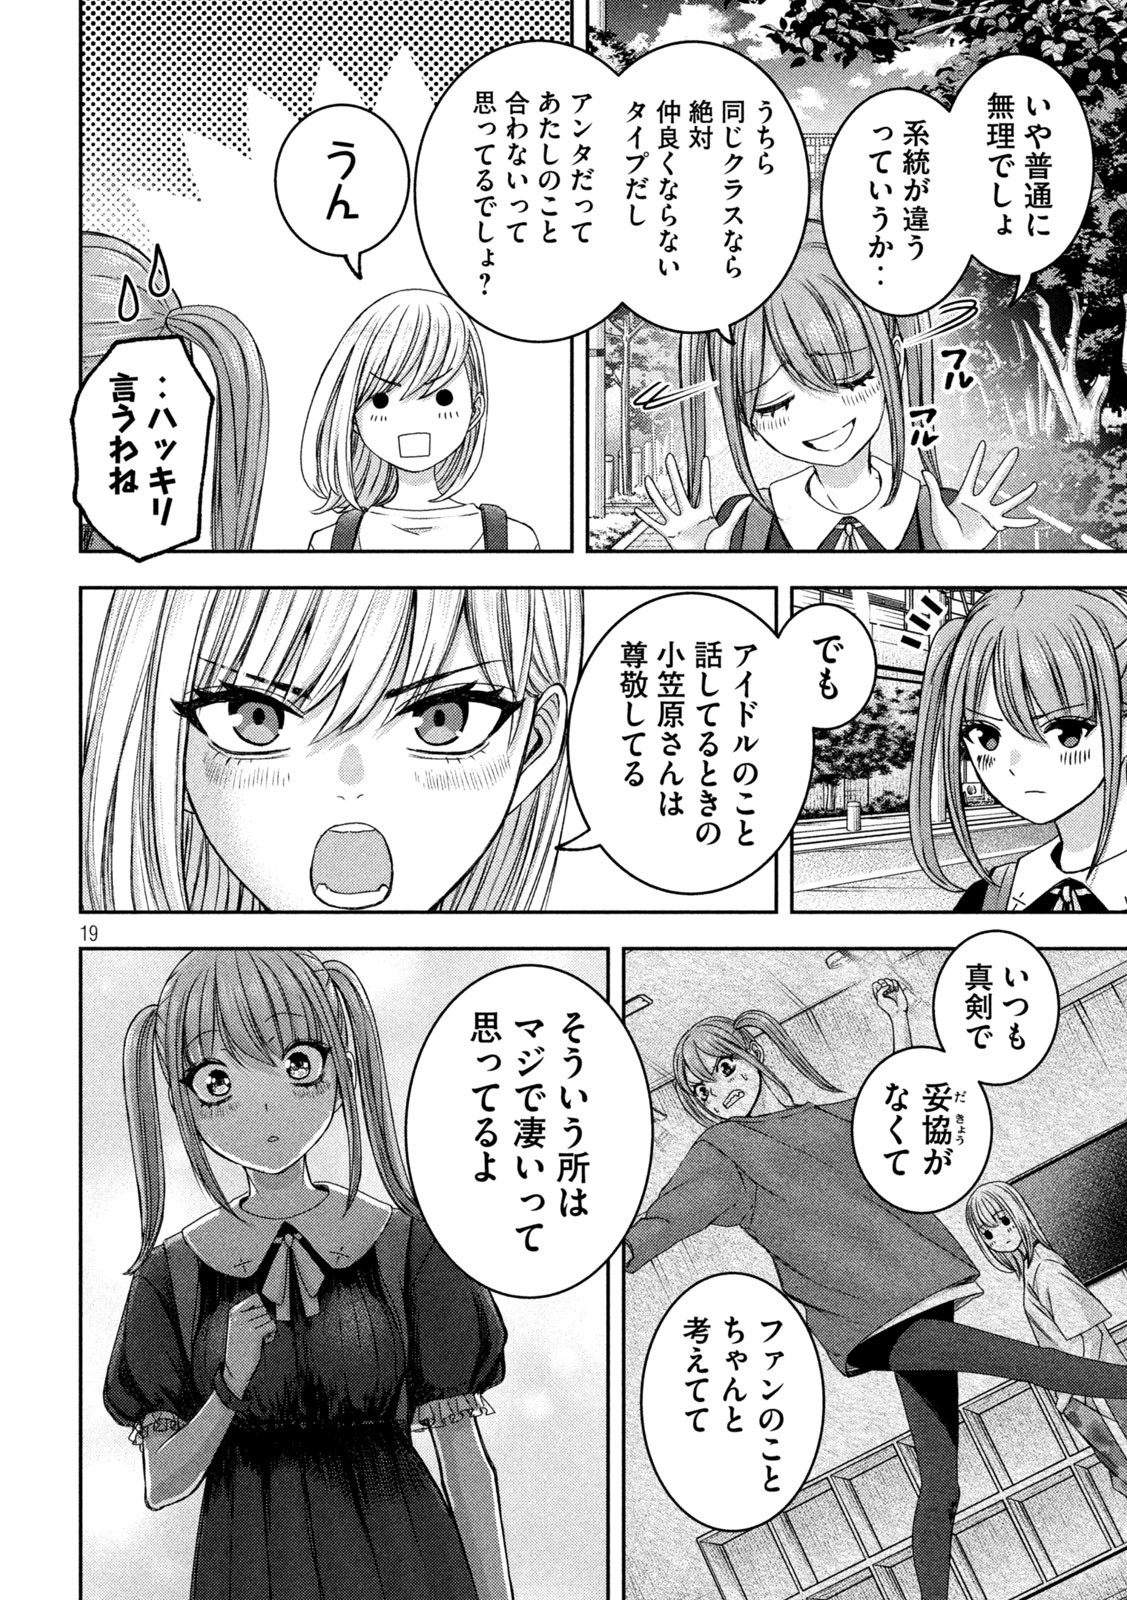 Watashi no Arika - Chapter 36 - Page 19